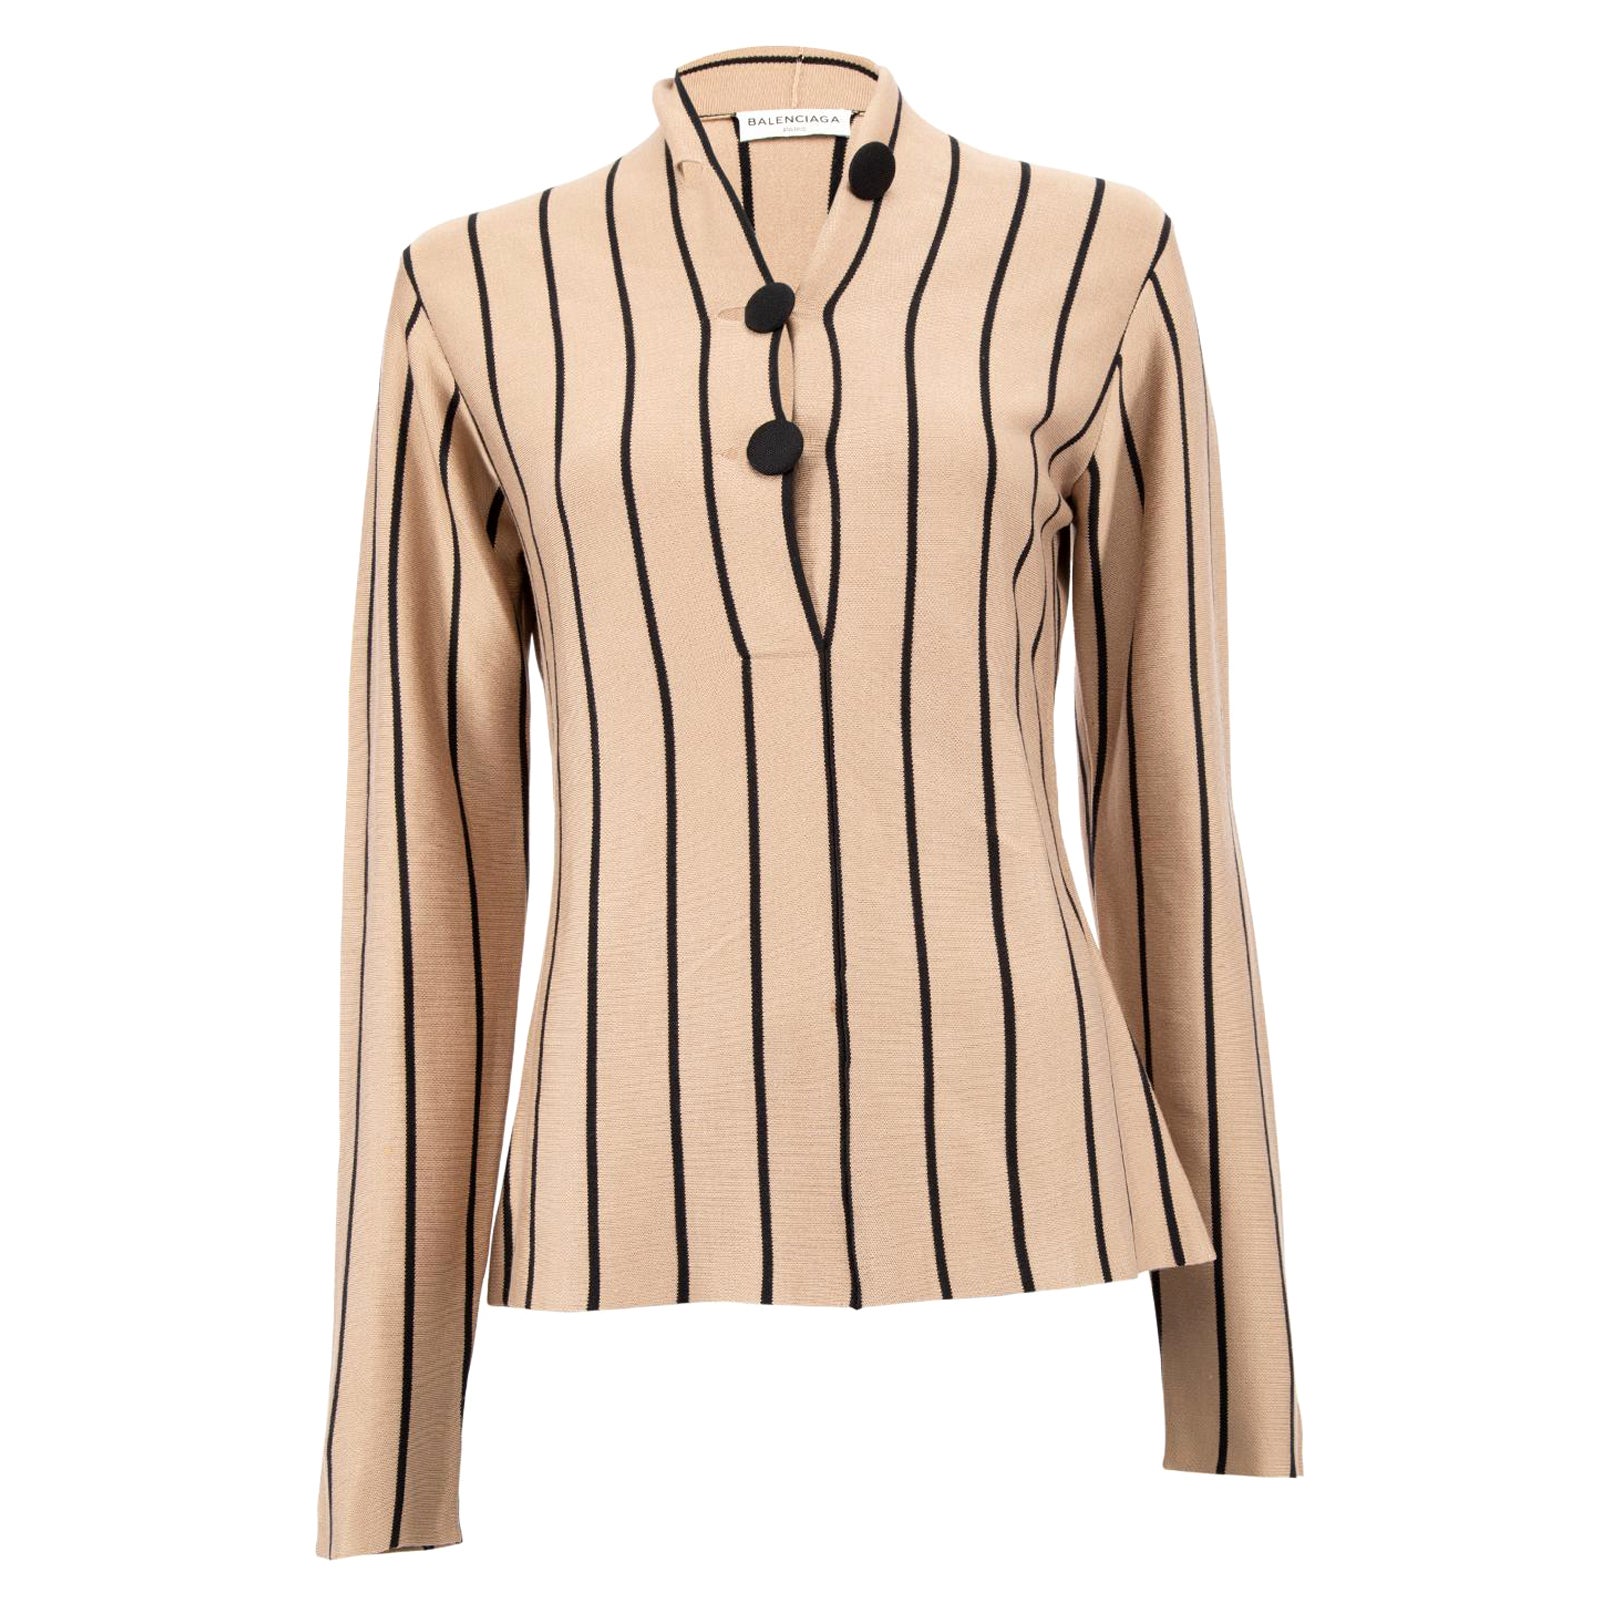 Pre-Loved Balenciaga Women's Brown Striped V Neck Top